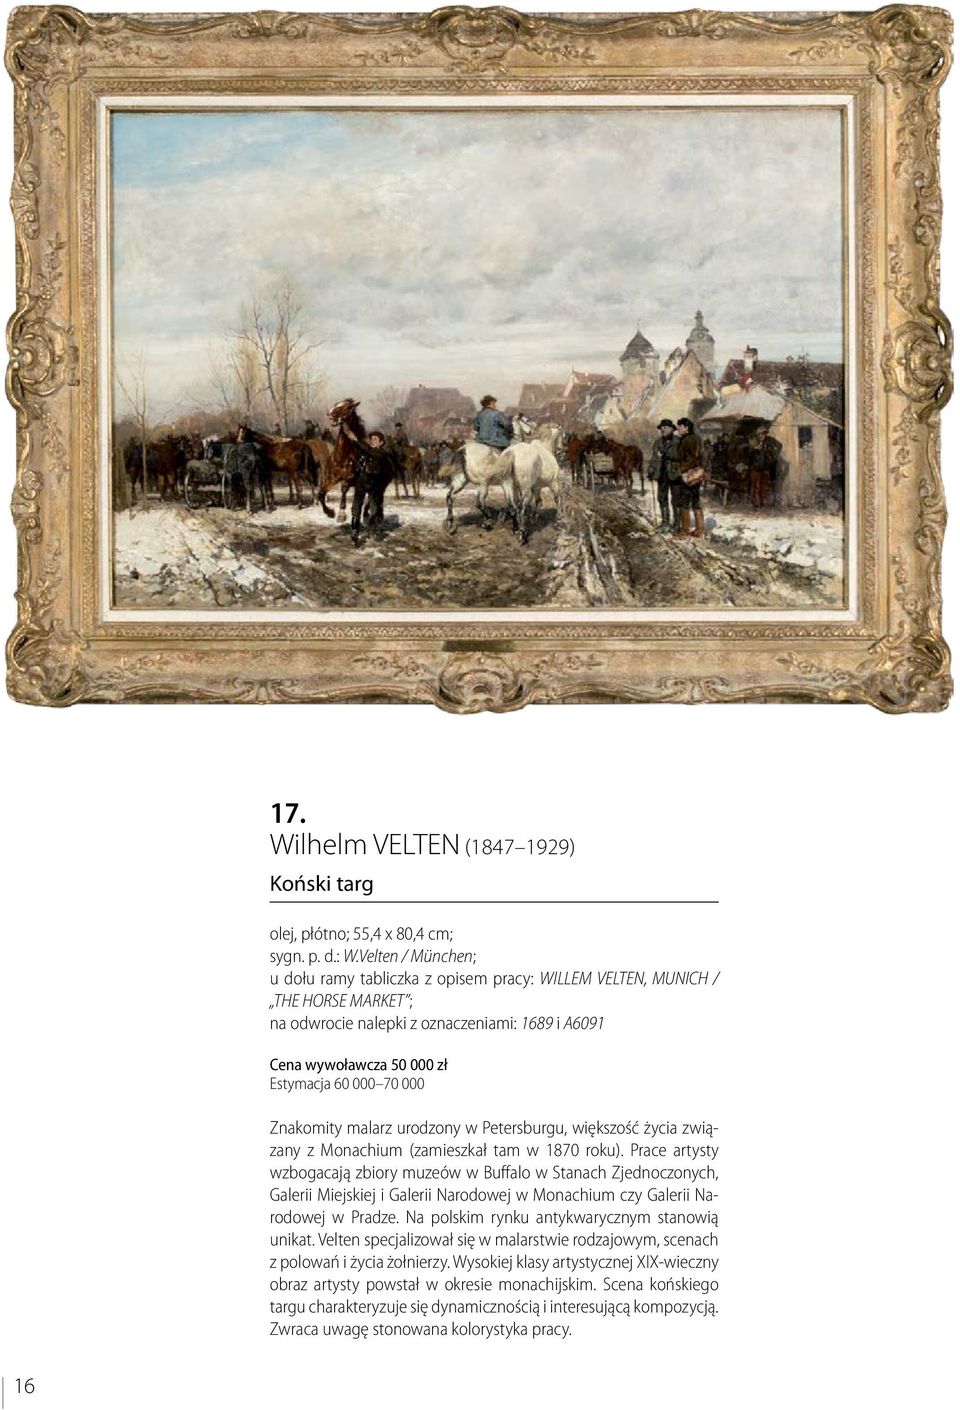 Znakomity malarz urodzony w Petersburgu, większość życia związany z Monachium (zamieszkał tam w 1870 roku).